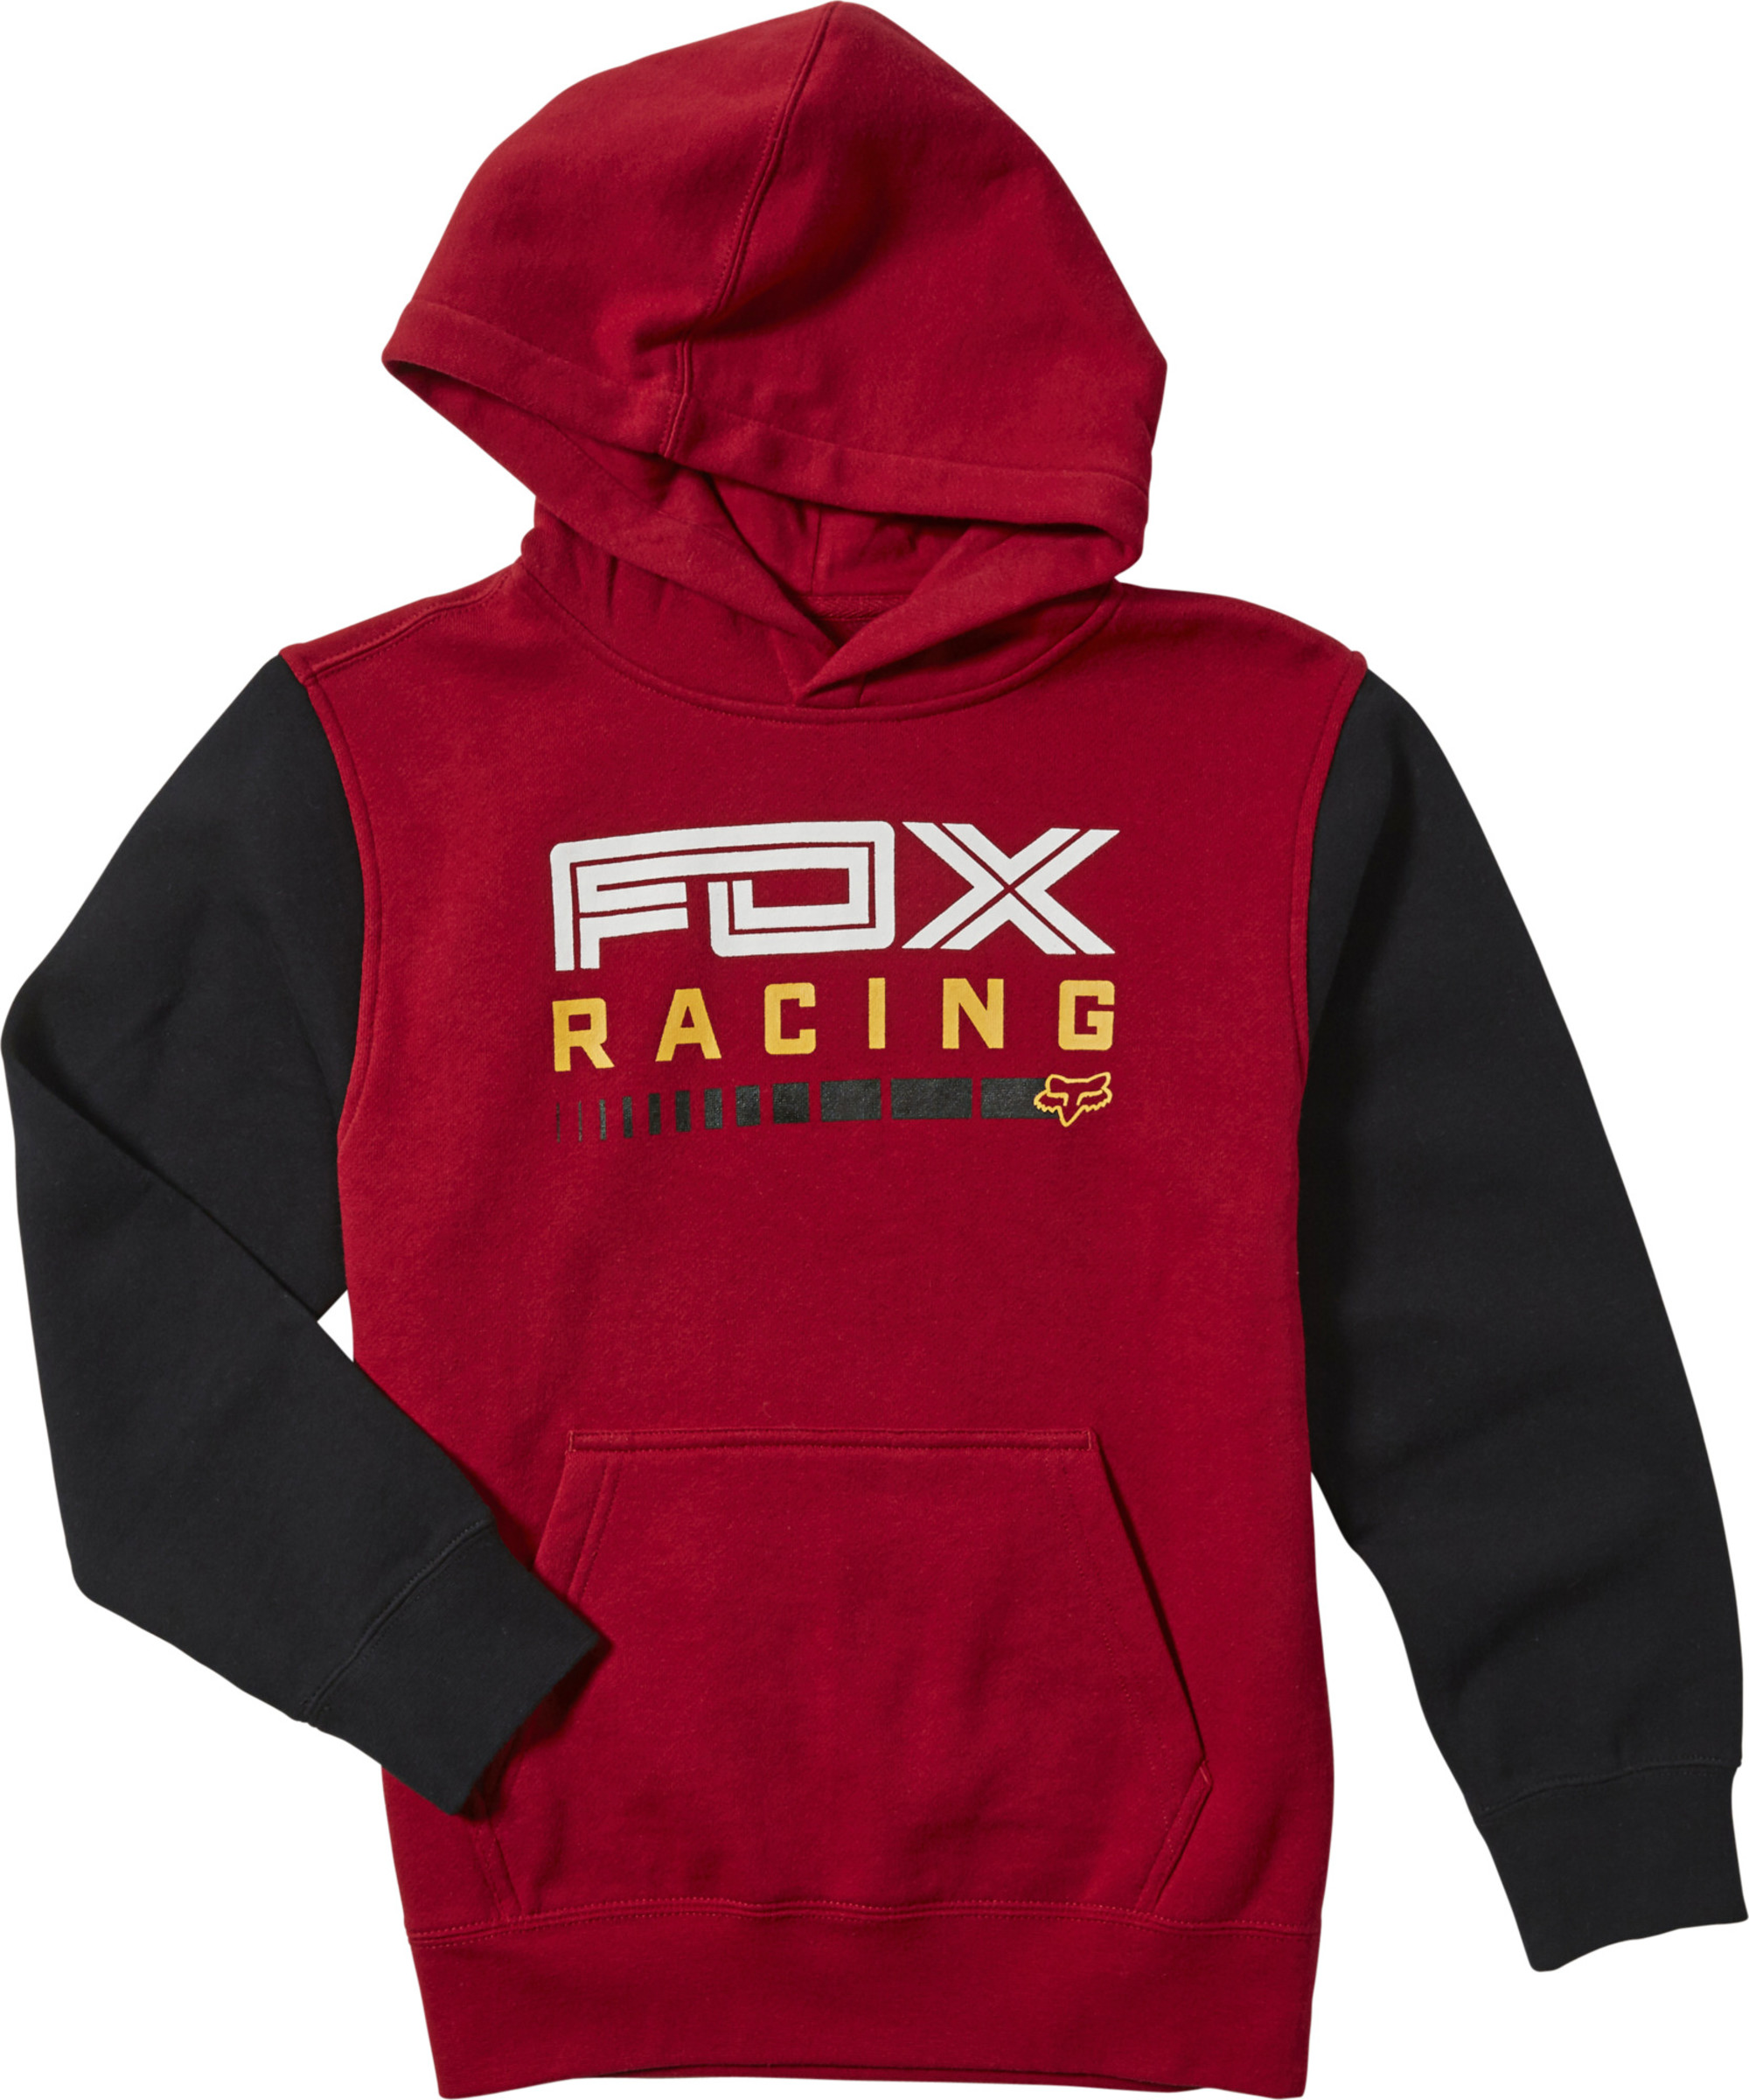 fox racing hoodies kids for show stopper pullover fleece